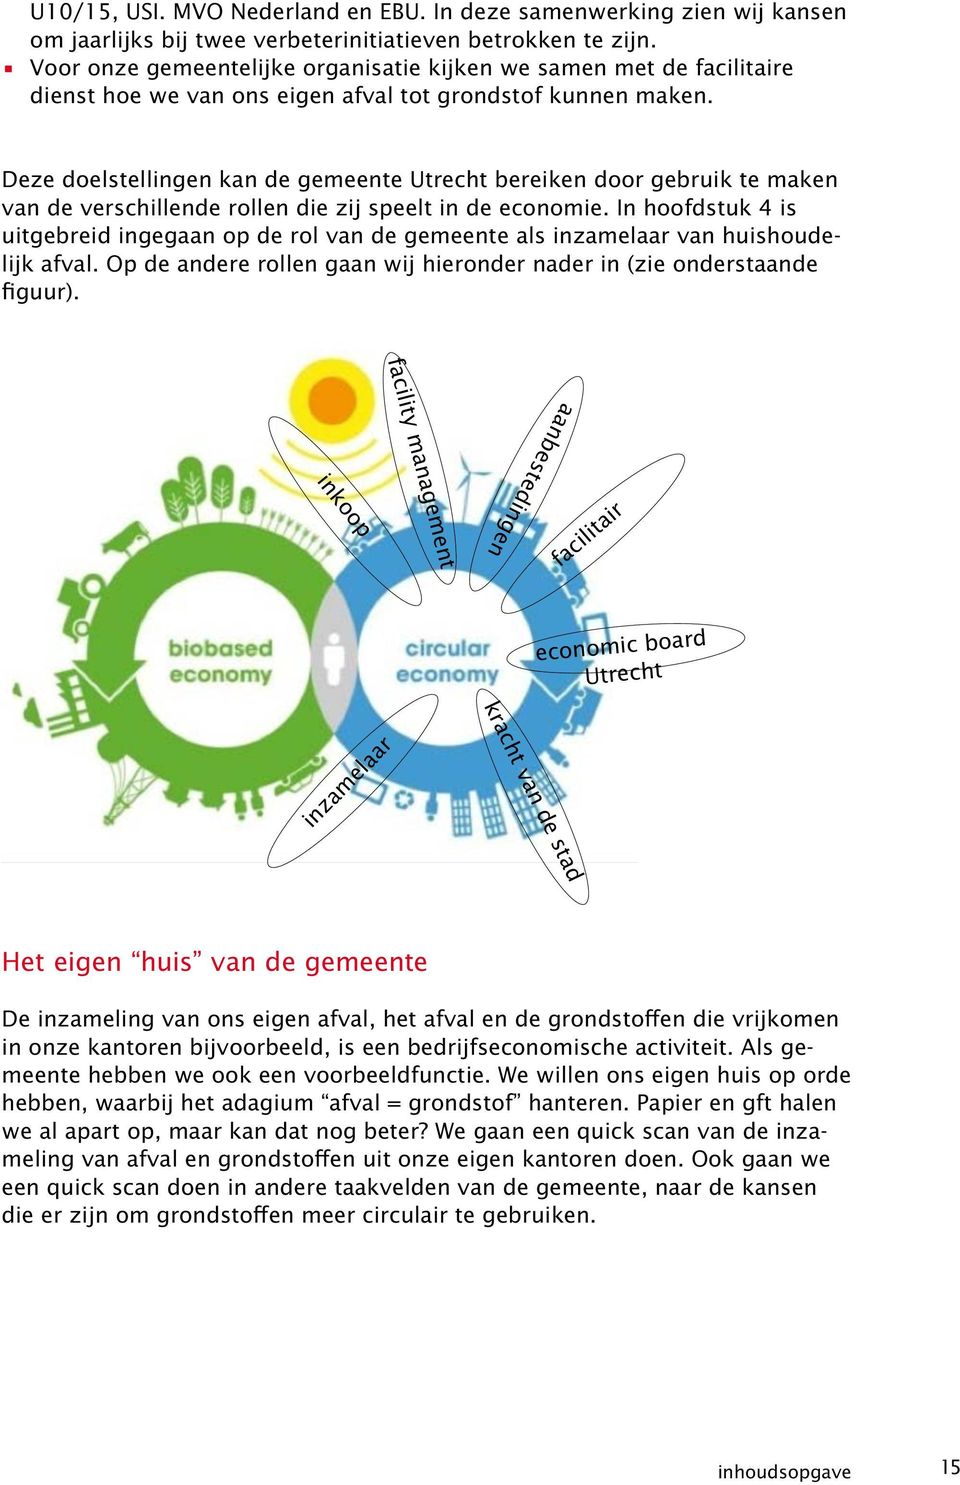 Deze doelstellingen kan de gemeente Utrecht bereiken door gebruik te maken van de verschillende rollen die zij speelt in de economie.